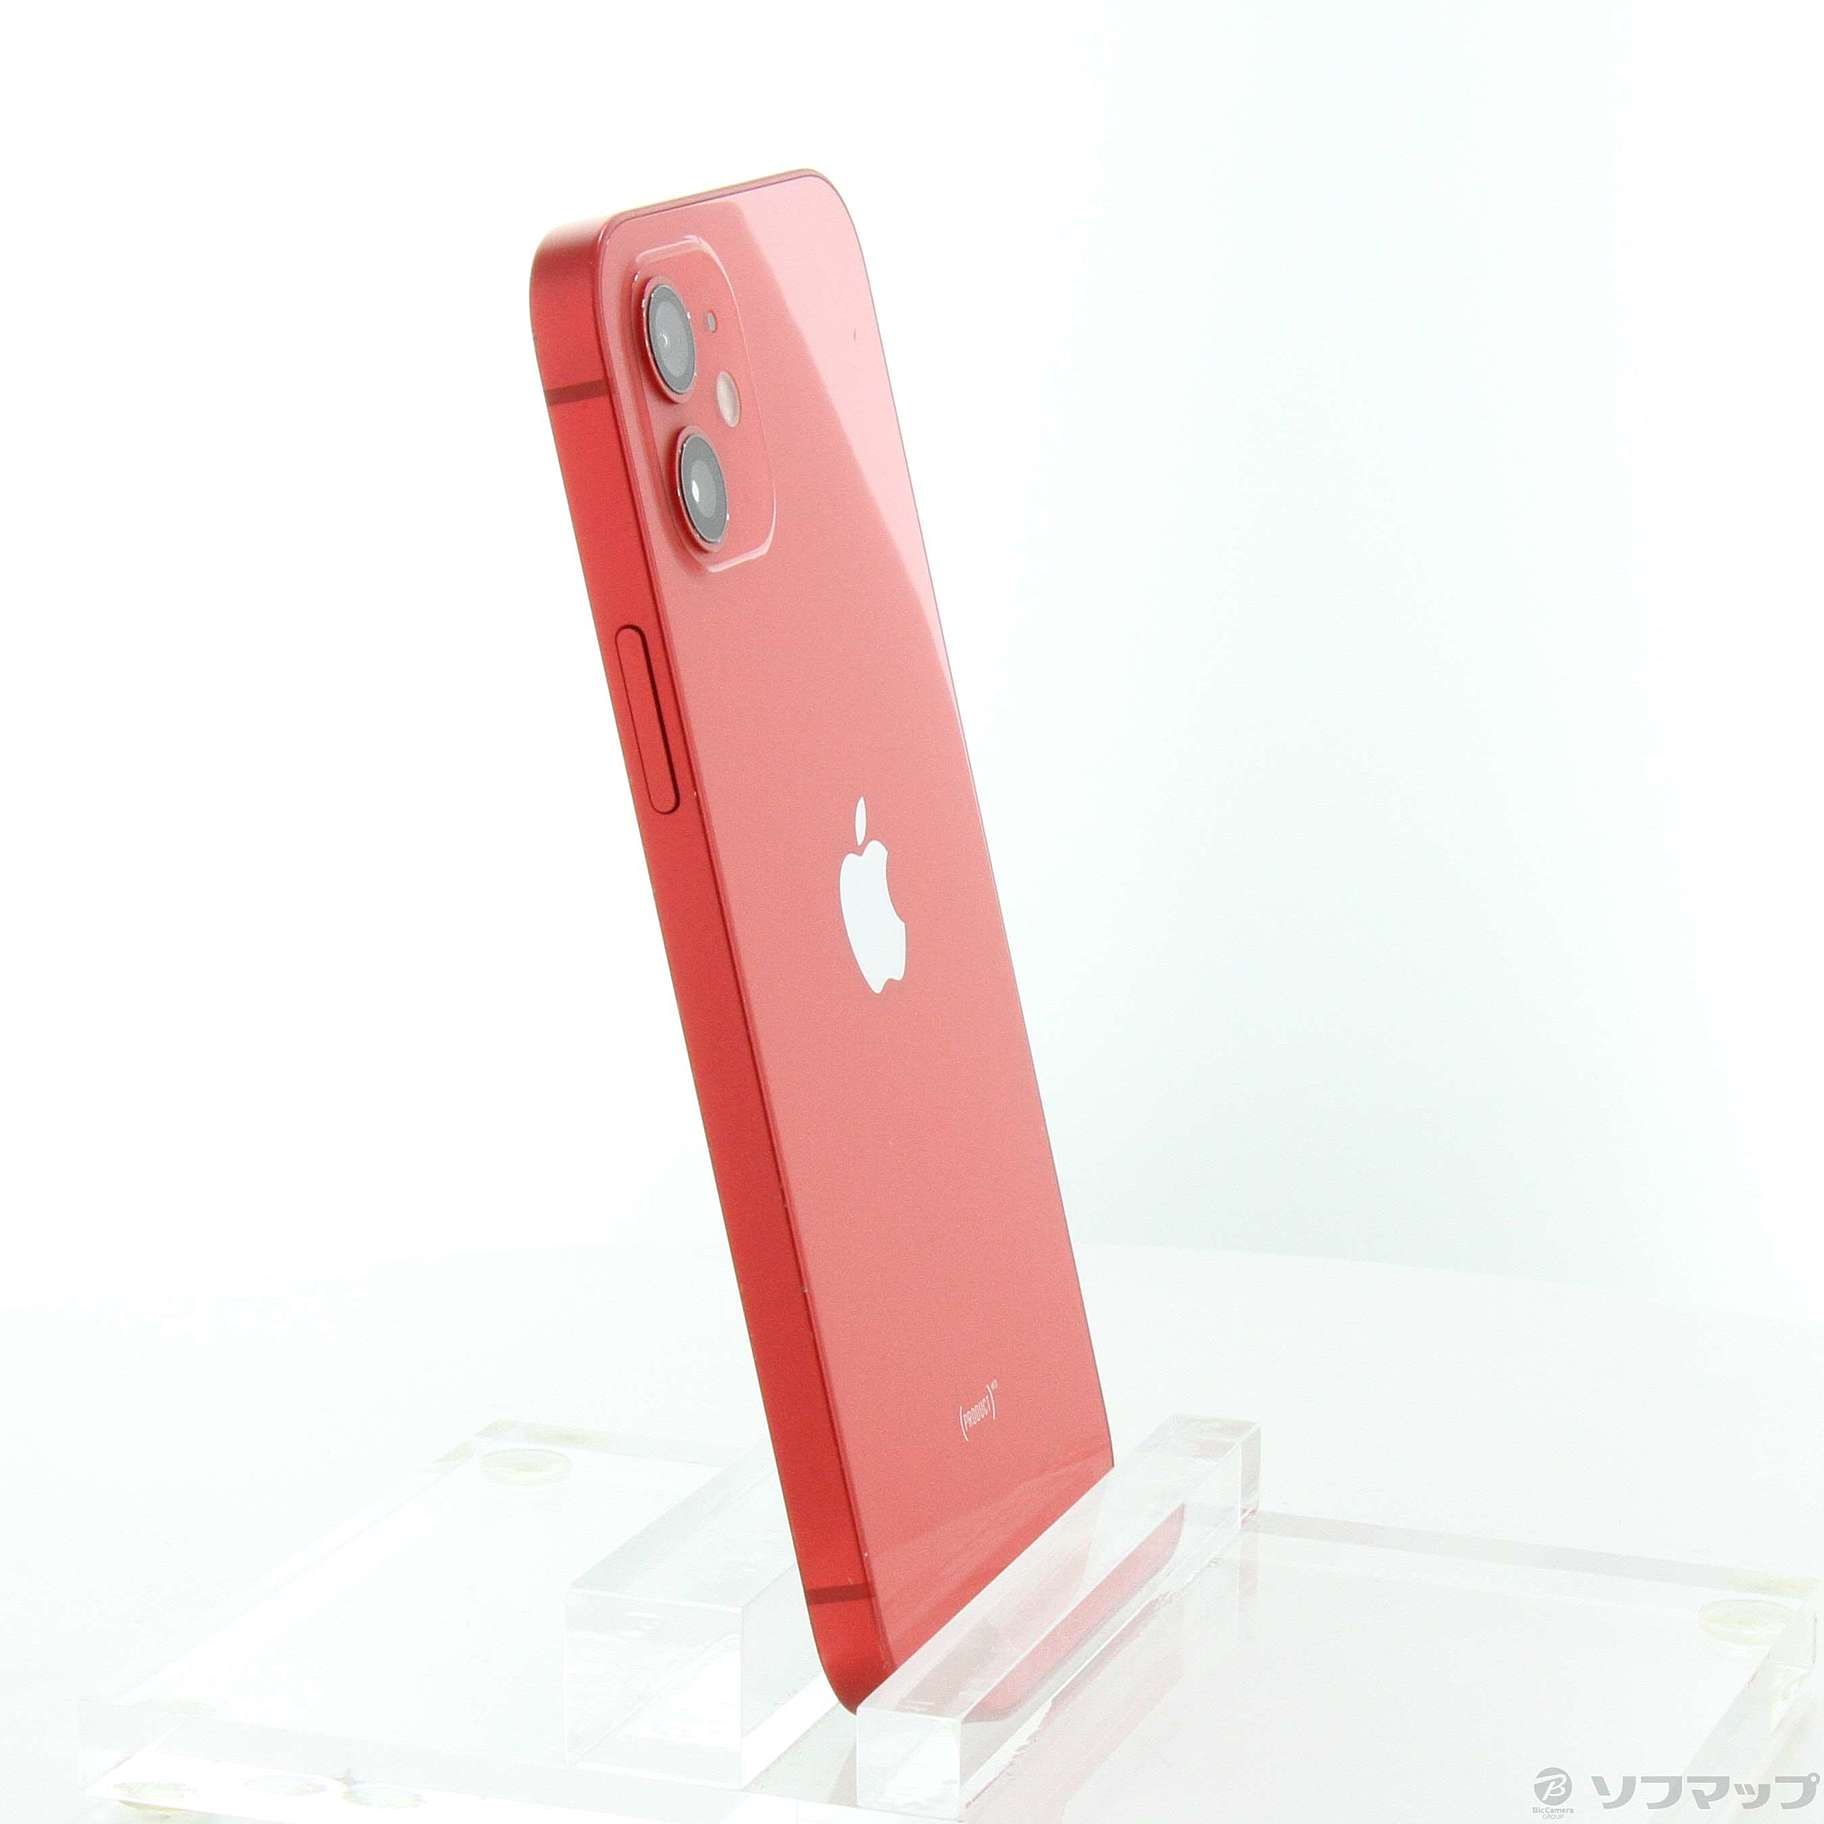 【新品未開封】iPhone12 64GB 赤 本体 SIMフリー